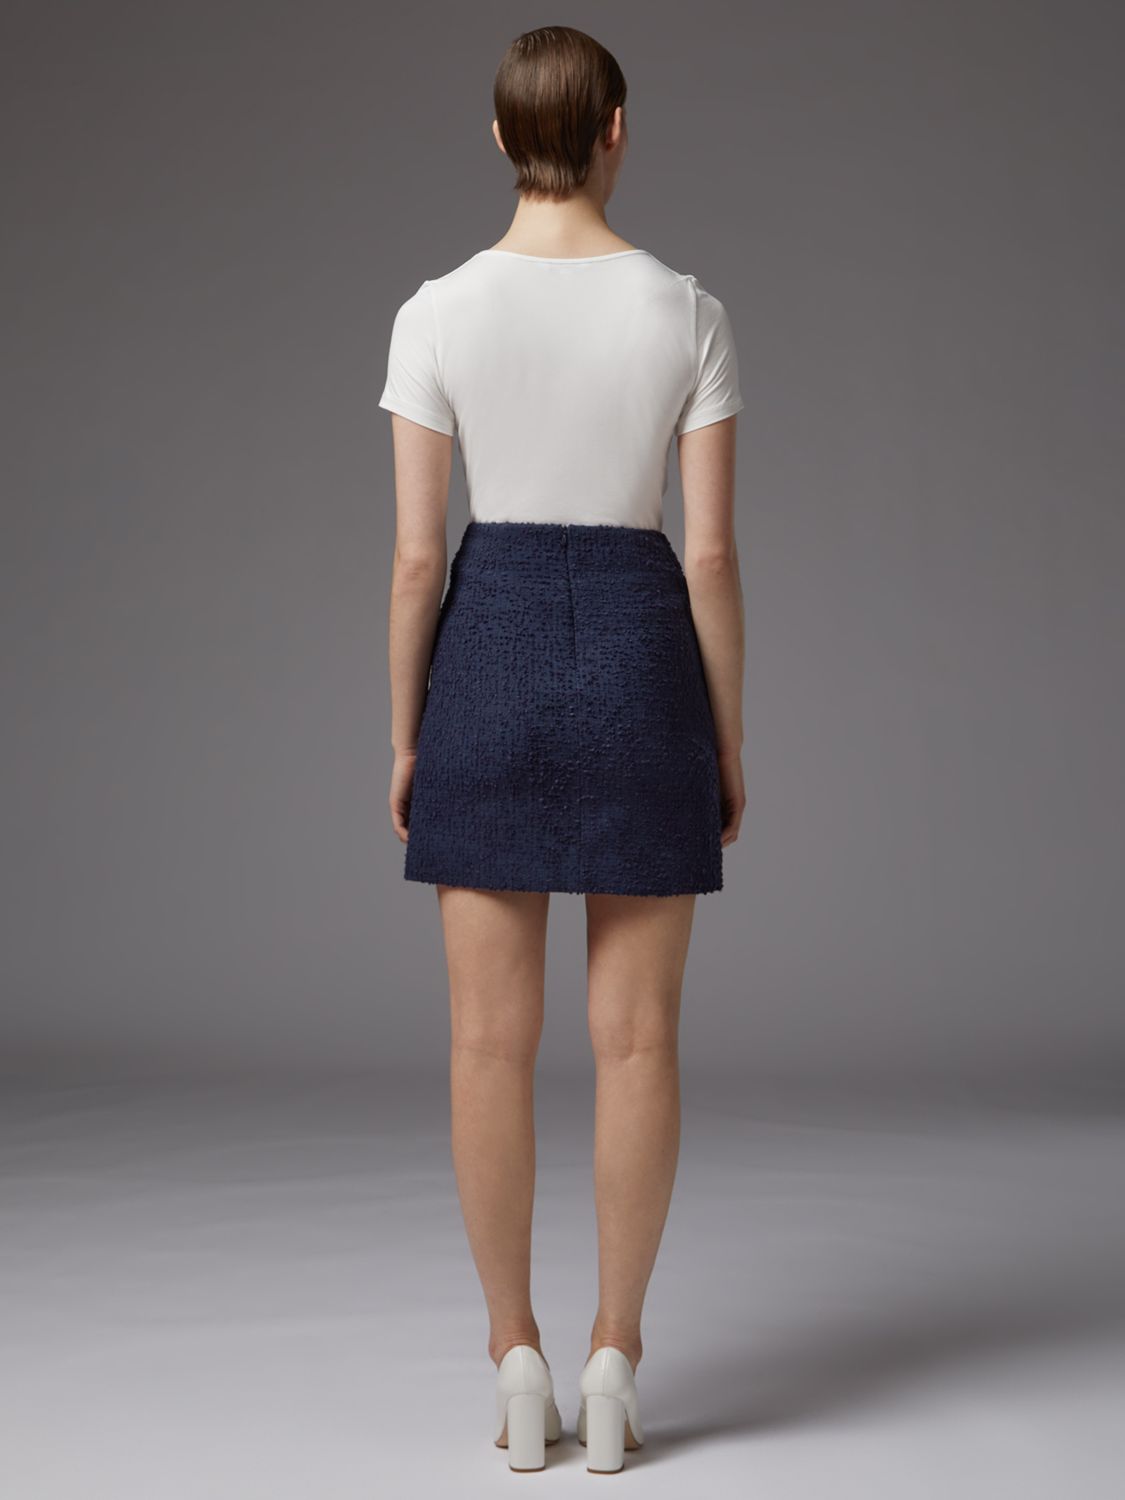 L.K.Bennett Charlee Tweed Skirt, Navy at John Lewis & Partners